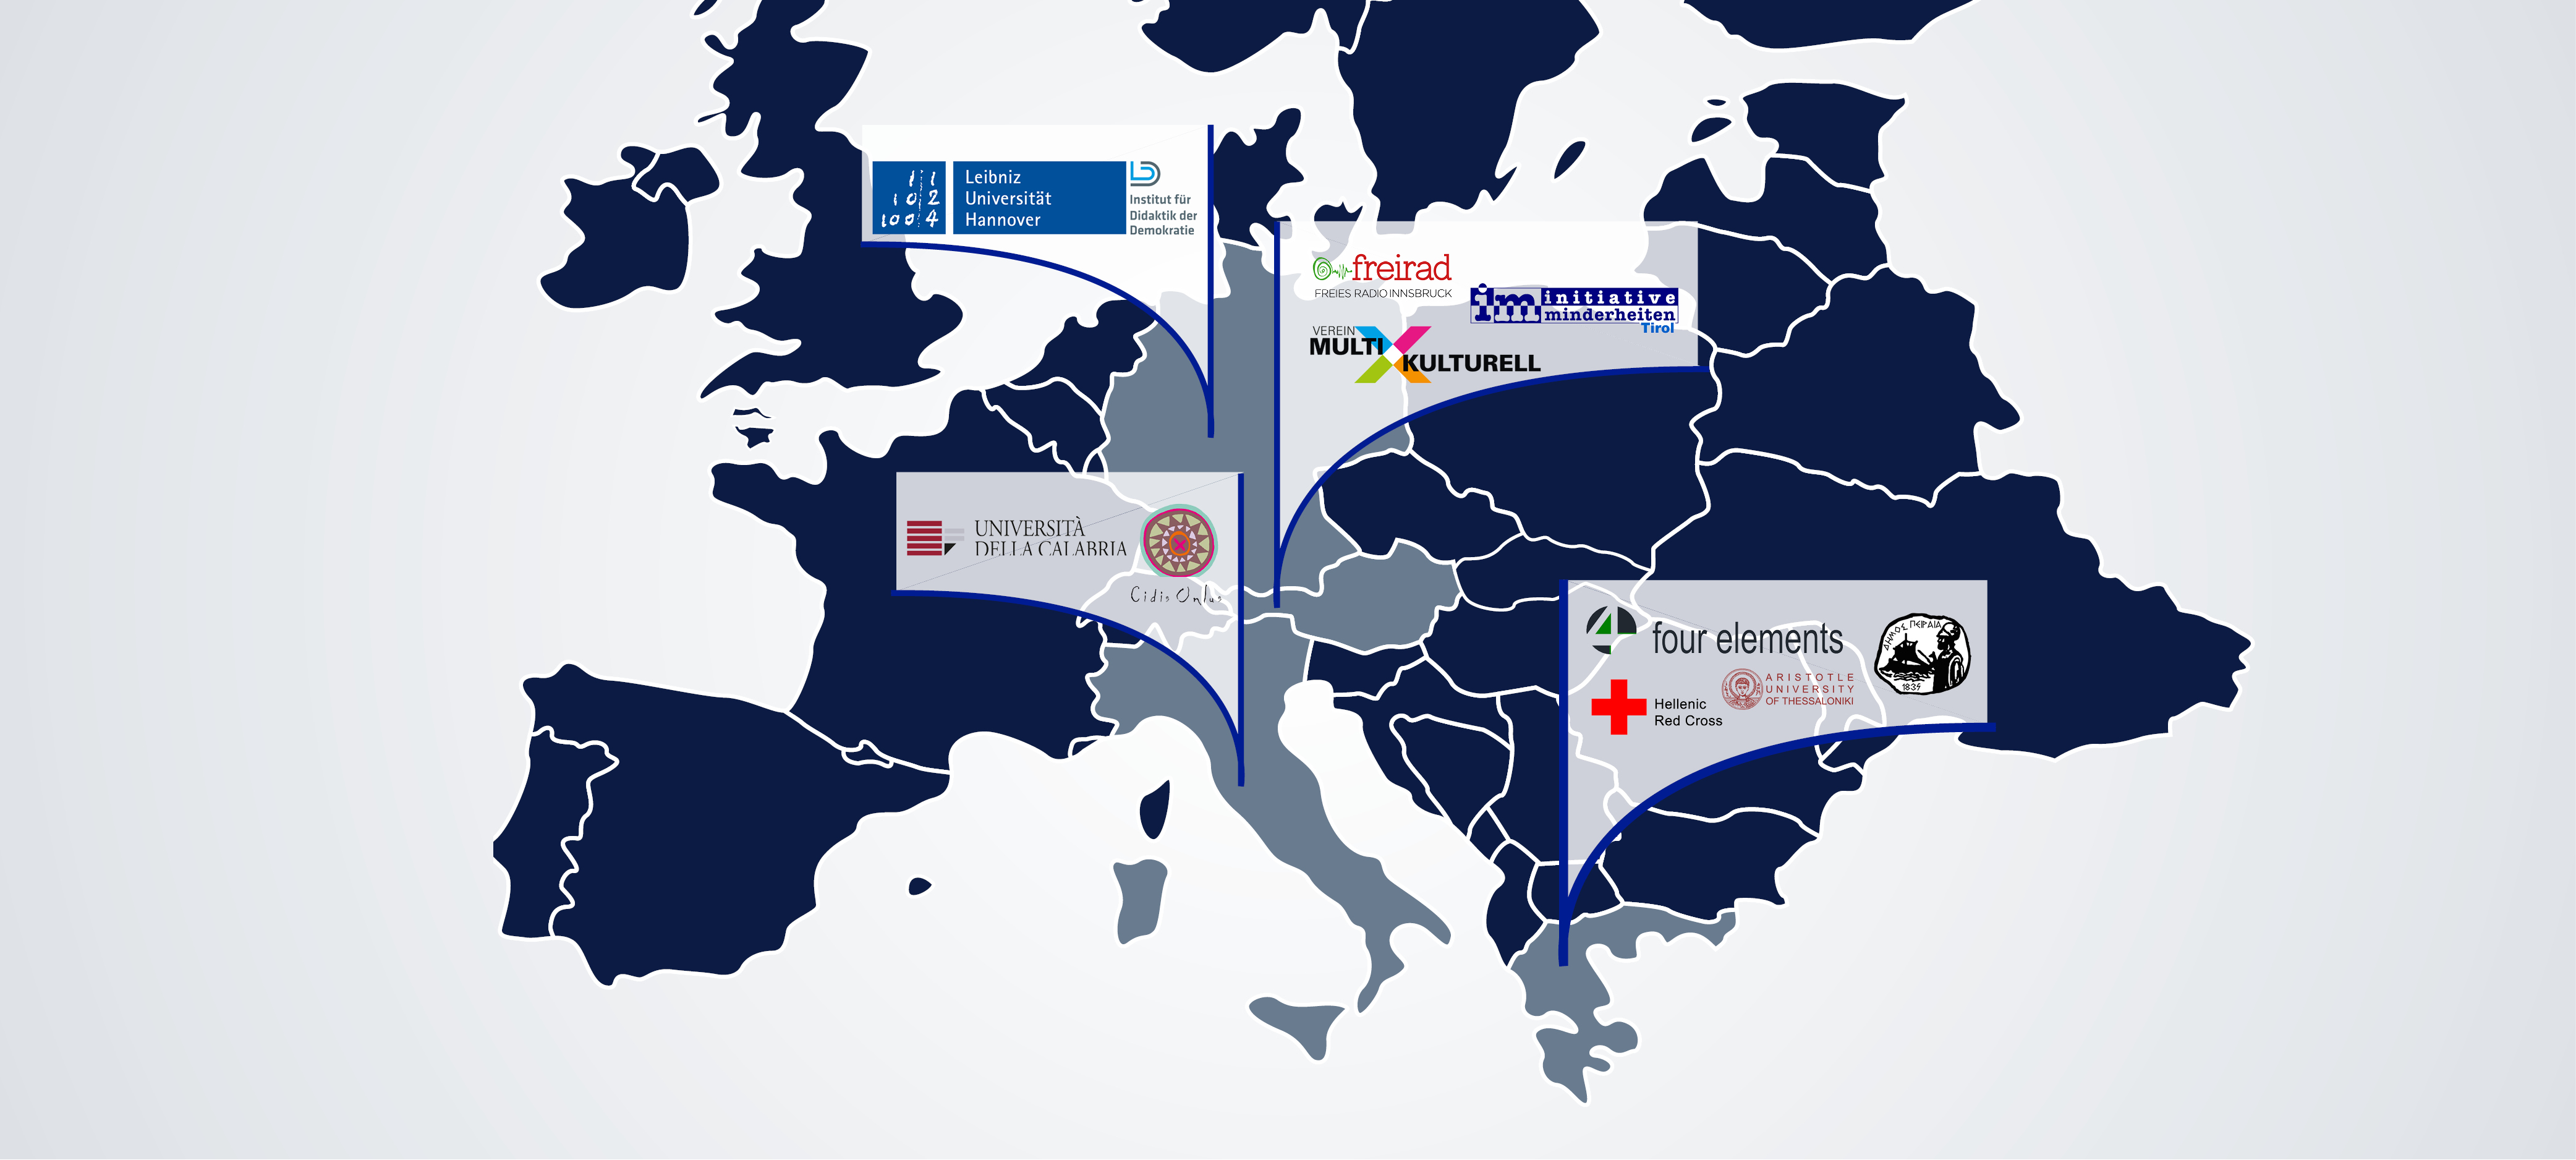 Mappa dell'Europa con i loghi delle organizzazioni partner nei rispettivi paesi